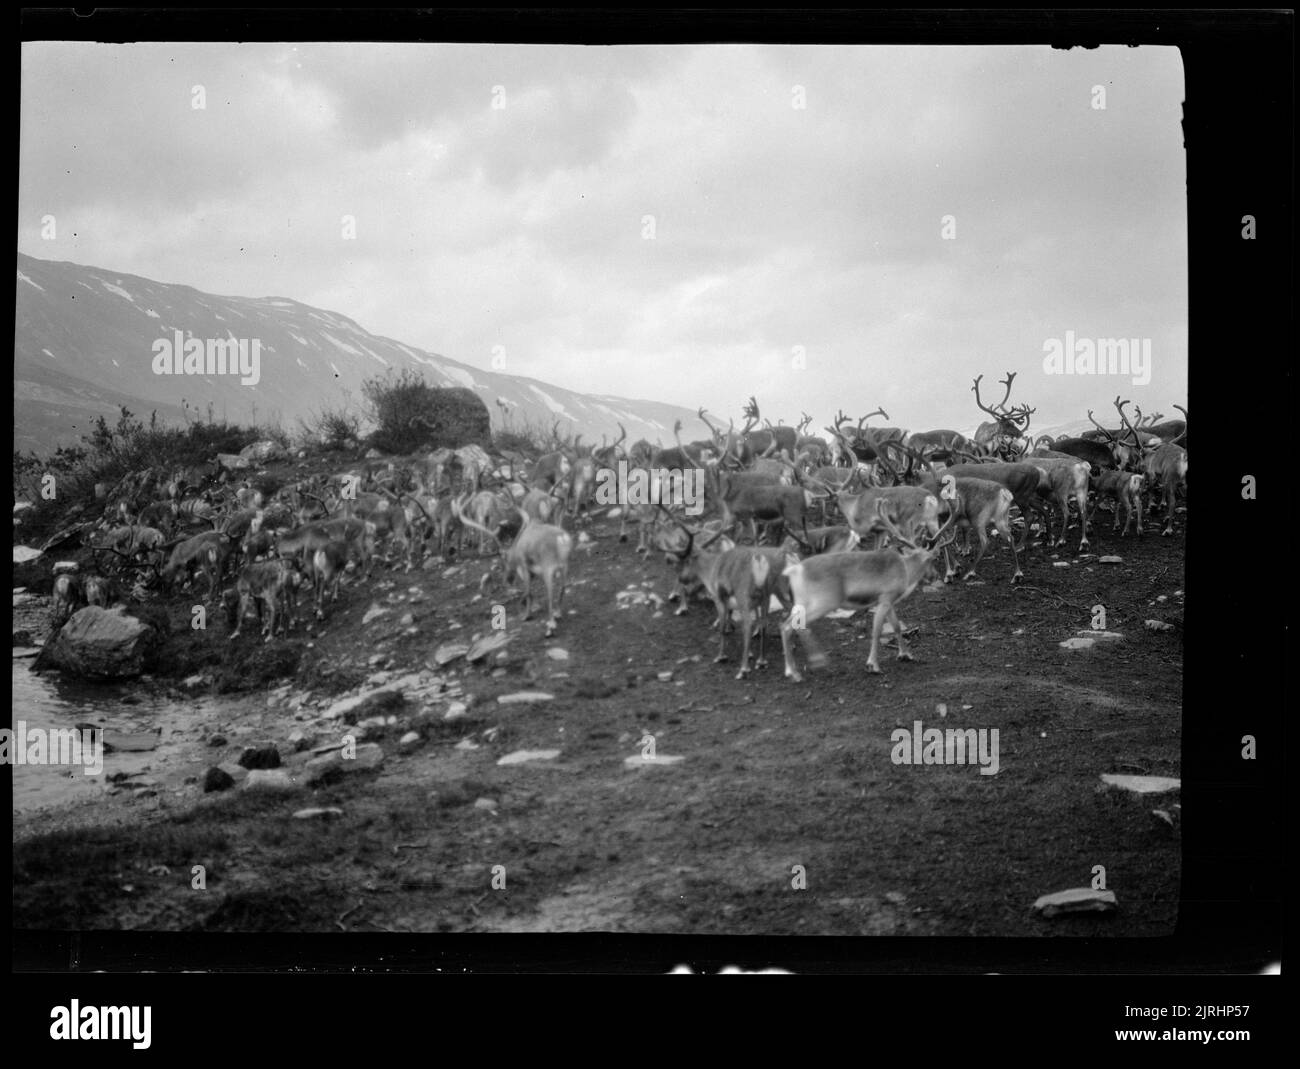 Herd of reindeer, 1929, Norway, maker unknown. Stock Photo